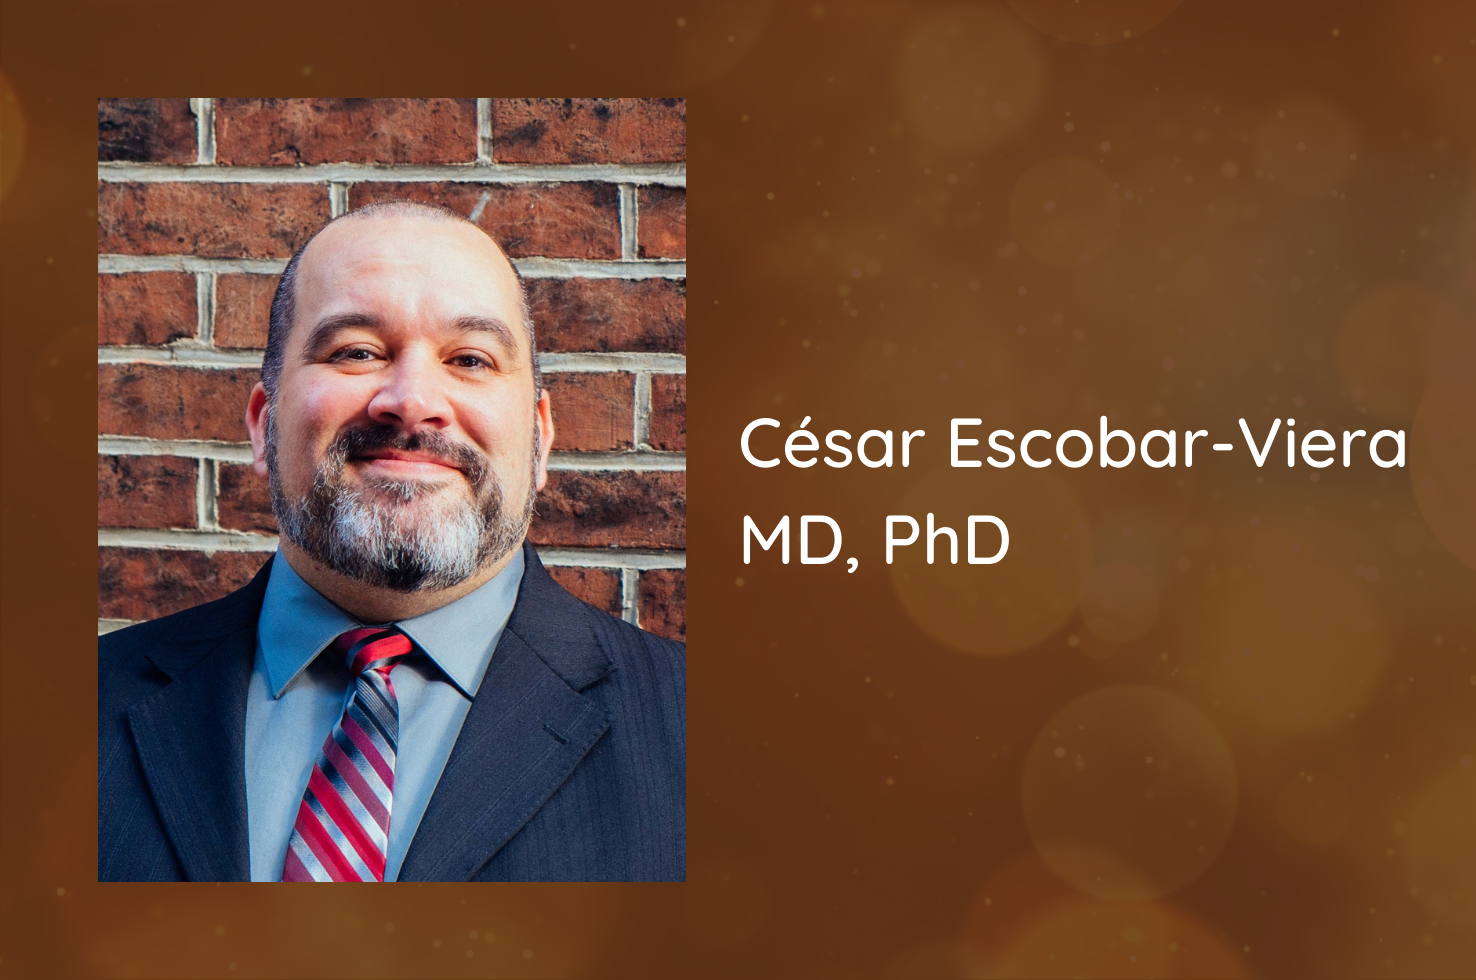 Meet Health Disparities Researcher César Escobar-Viera, MD, PhD 